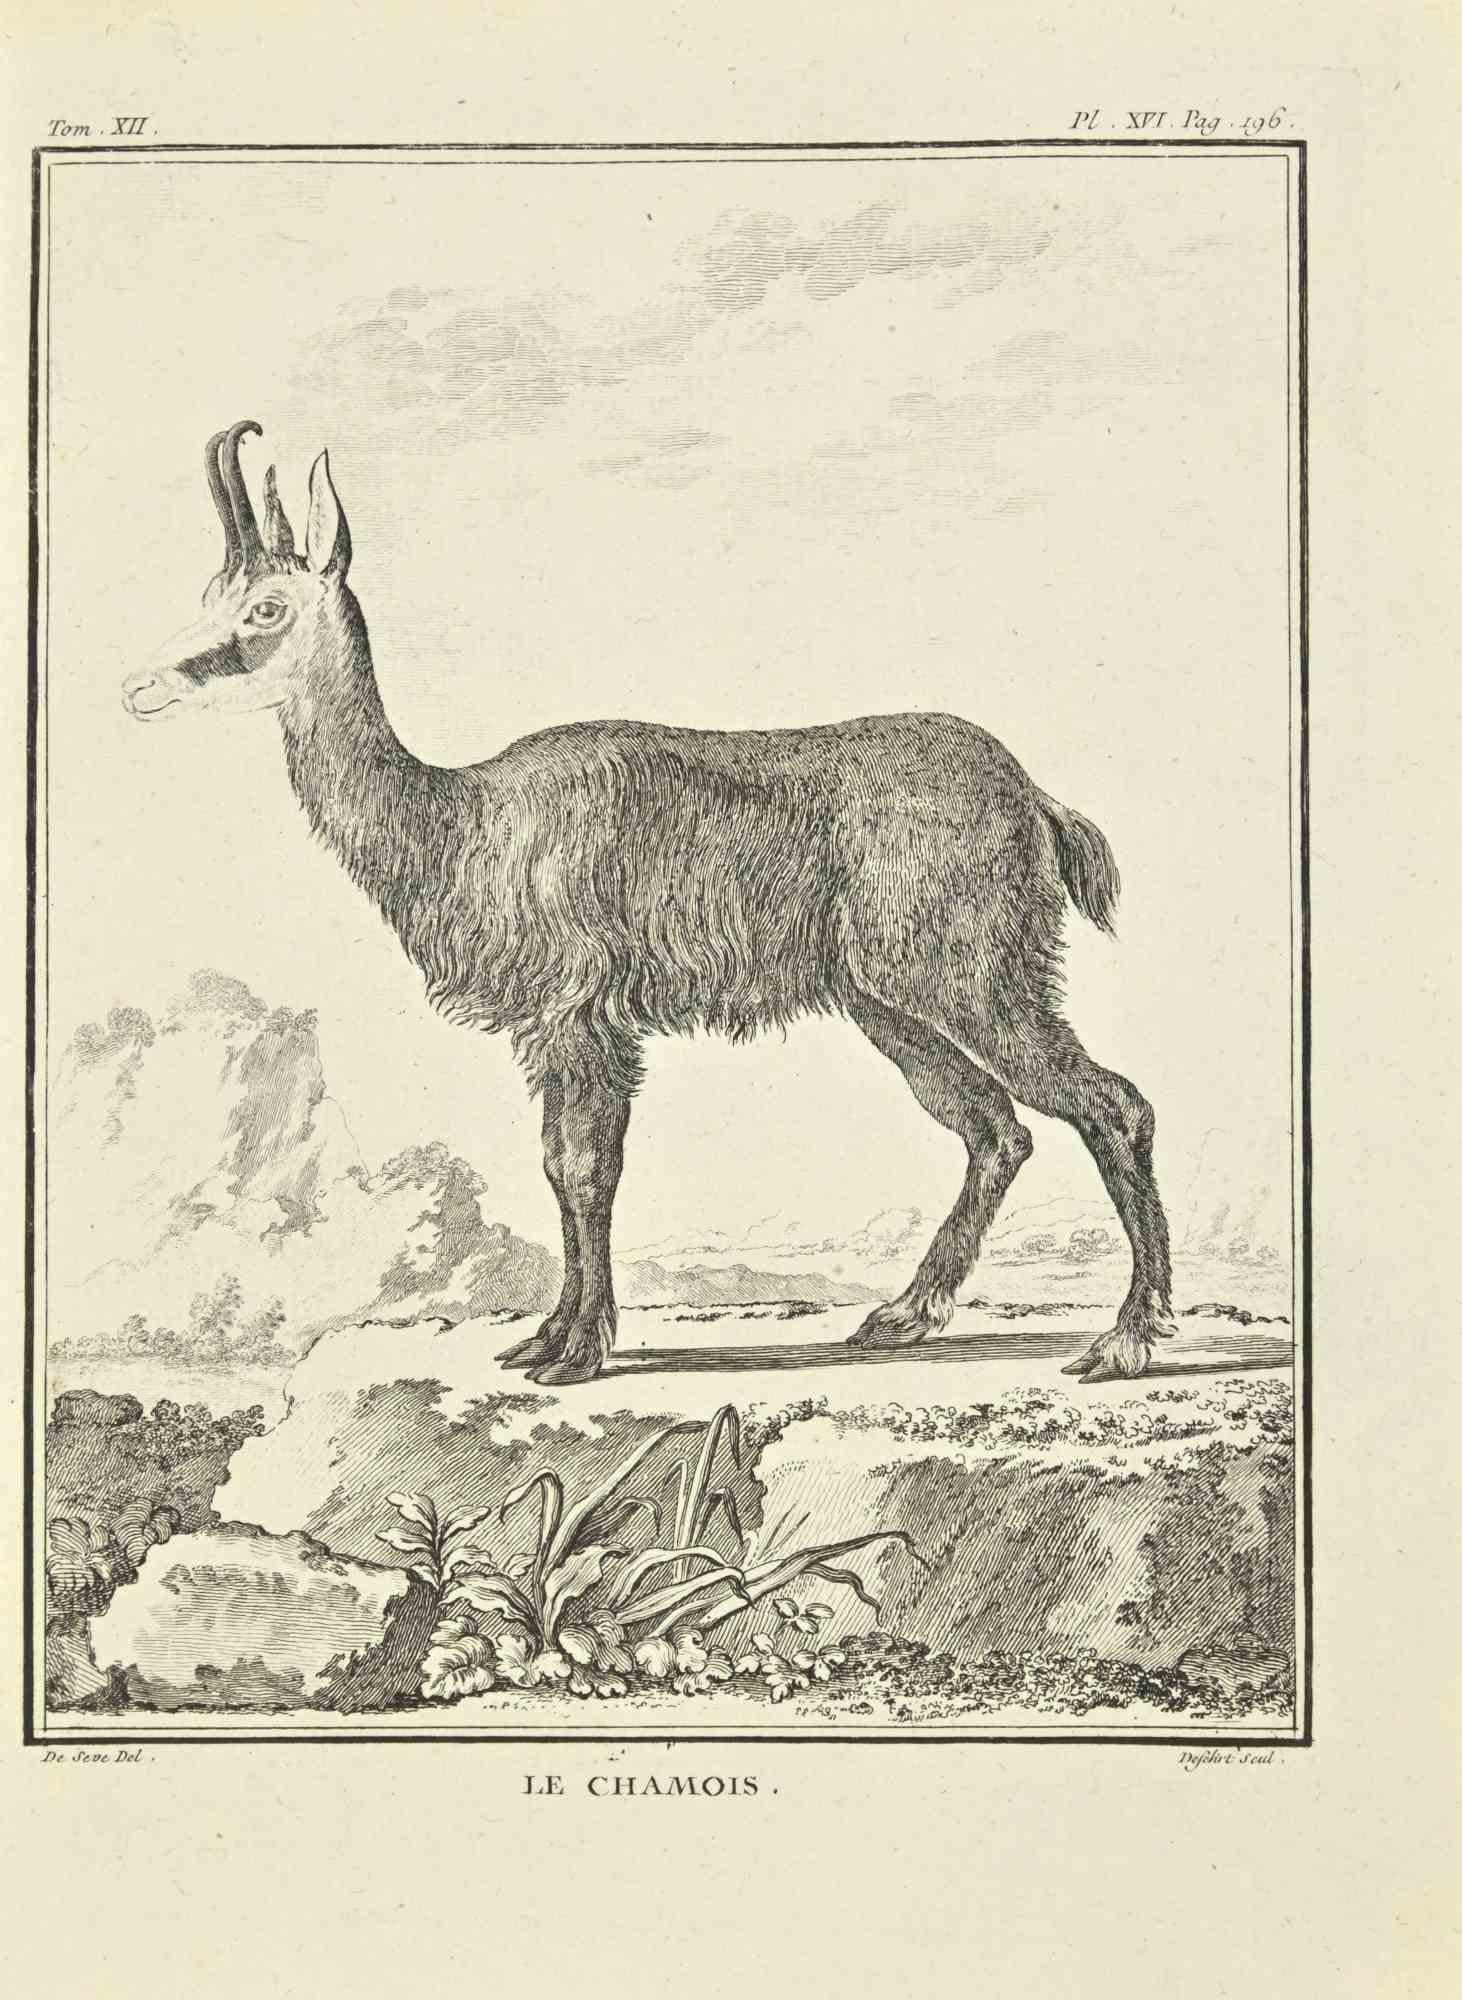 Le Chamois est une gravure réalisée par Antoine Defehrt en 1771.

Il appartient à la suite "Histoire naturelle, générale et particulière avec la description du Cabinet du Roi".

Signature de l'Artistics gravée en bas à droite.

Bonnes conditions